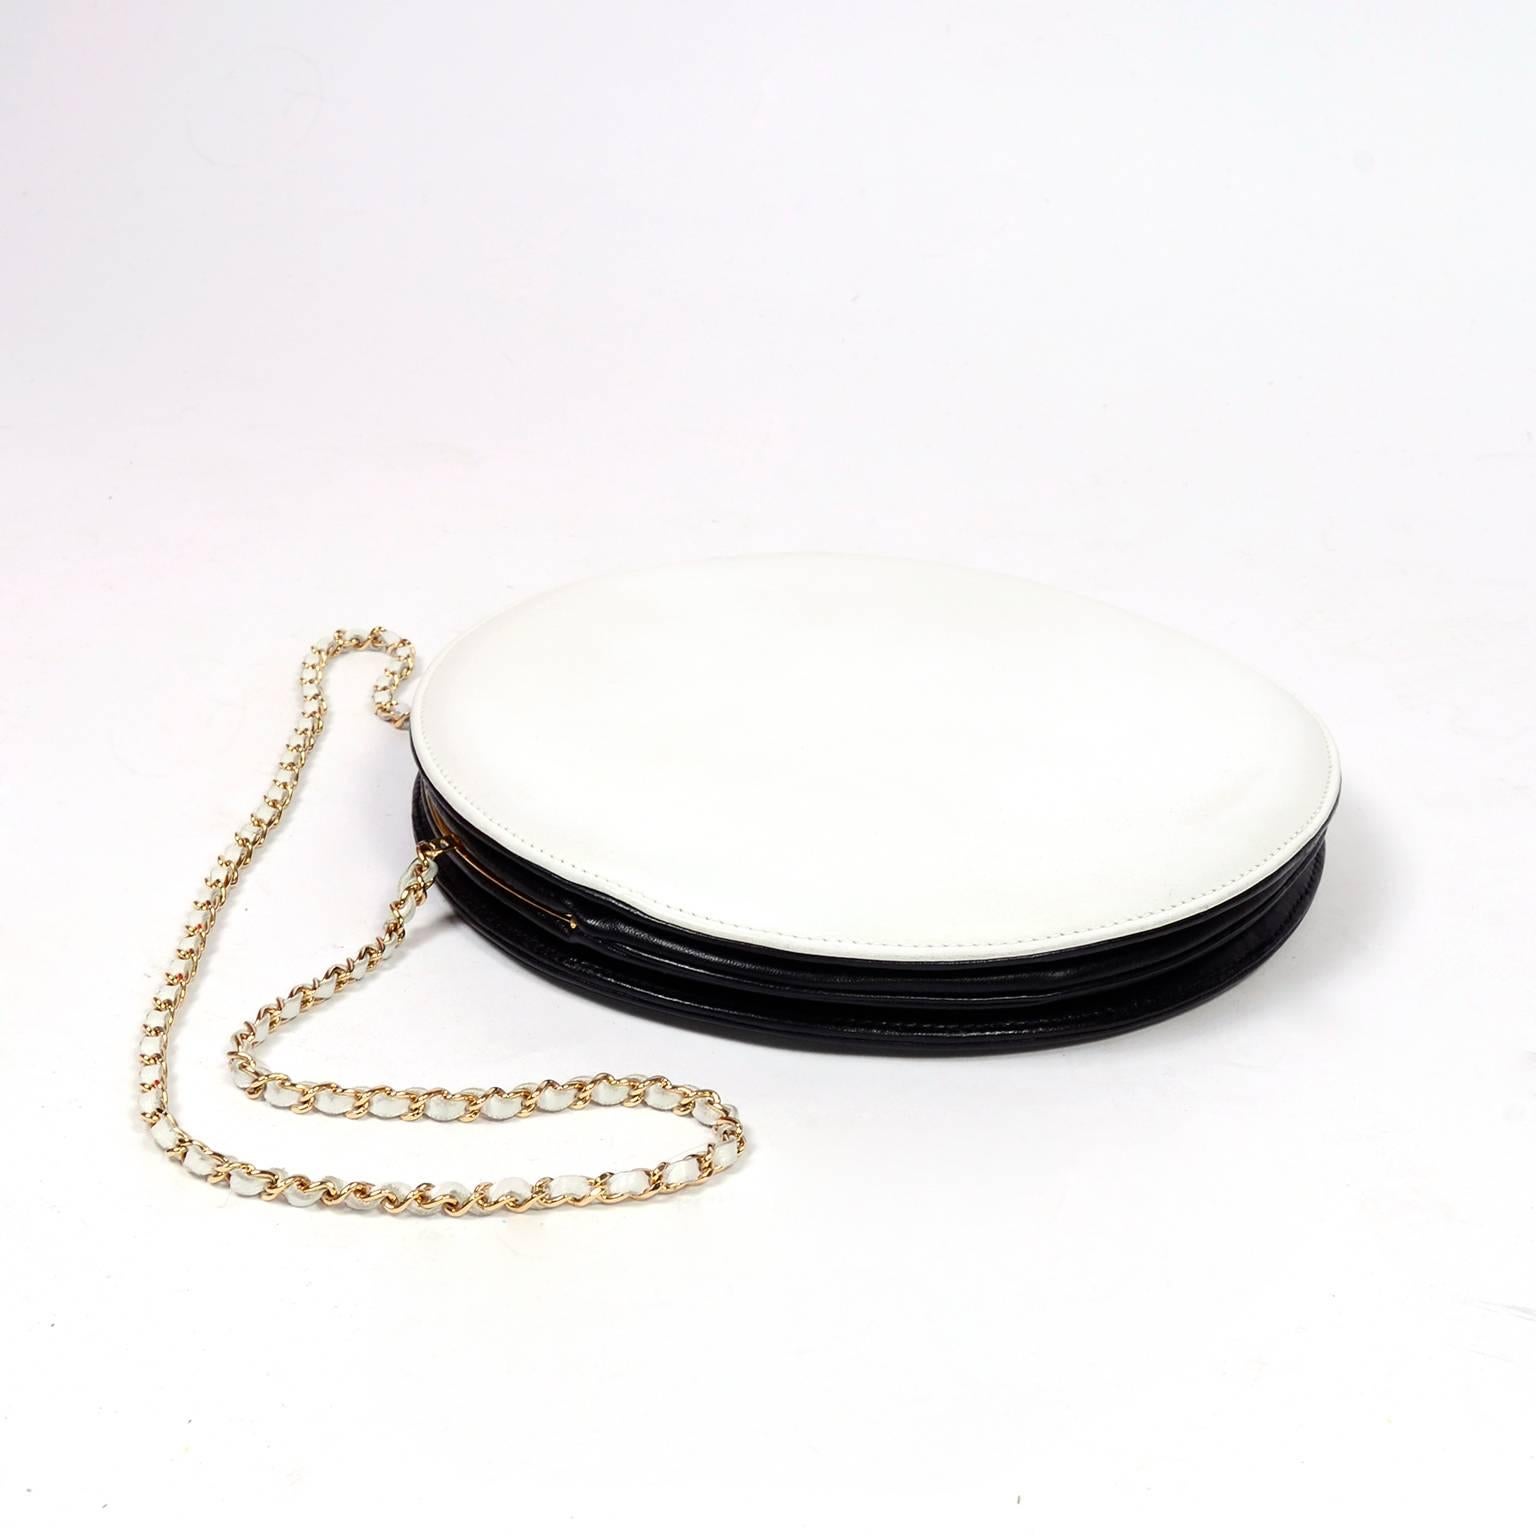 Seltene Chanel runde schwarz-weiße Lammfell-Handtasche Circle Umhängetasche oder Clutch 2